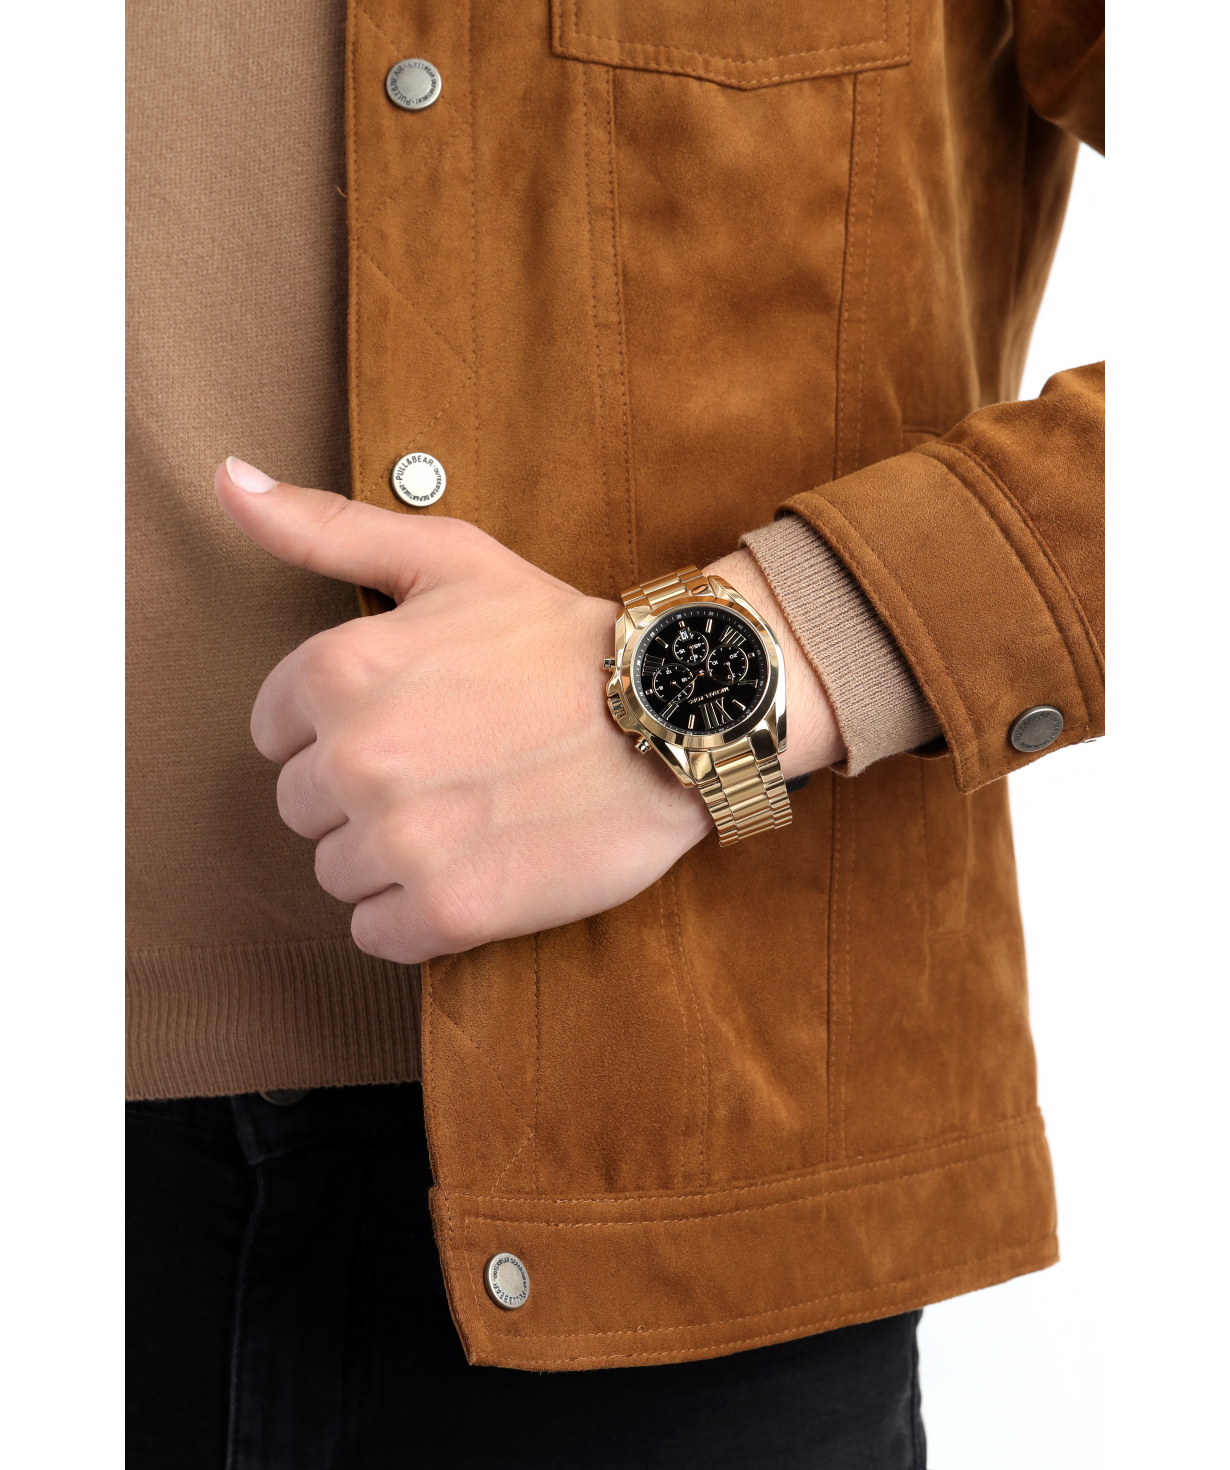 Wristwatch  `Michael Kors` MK5739